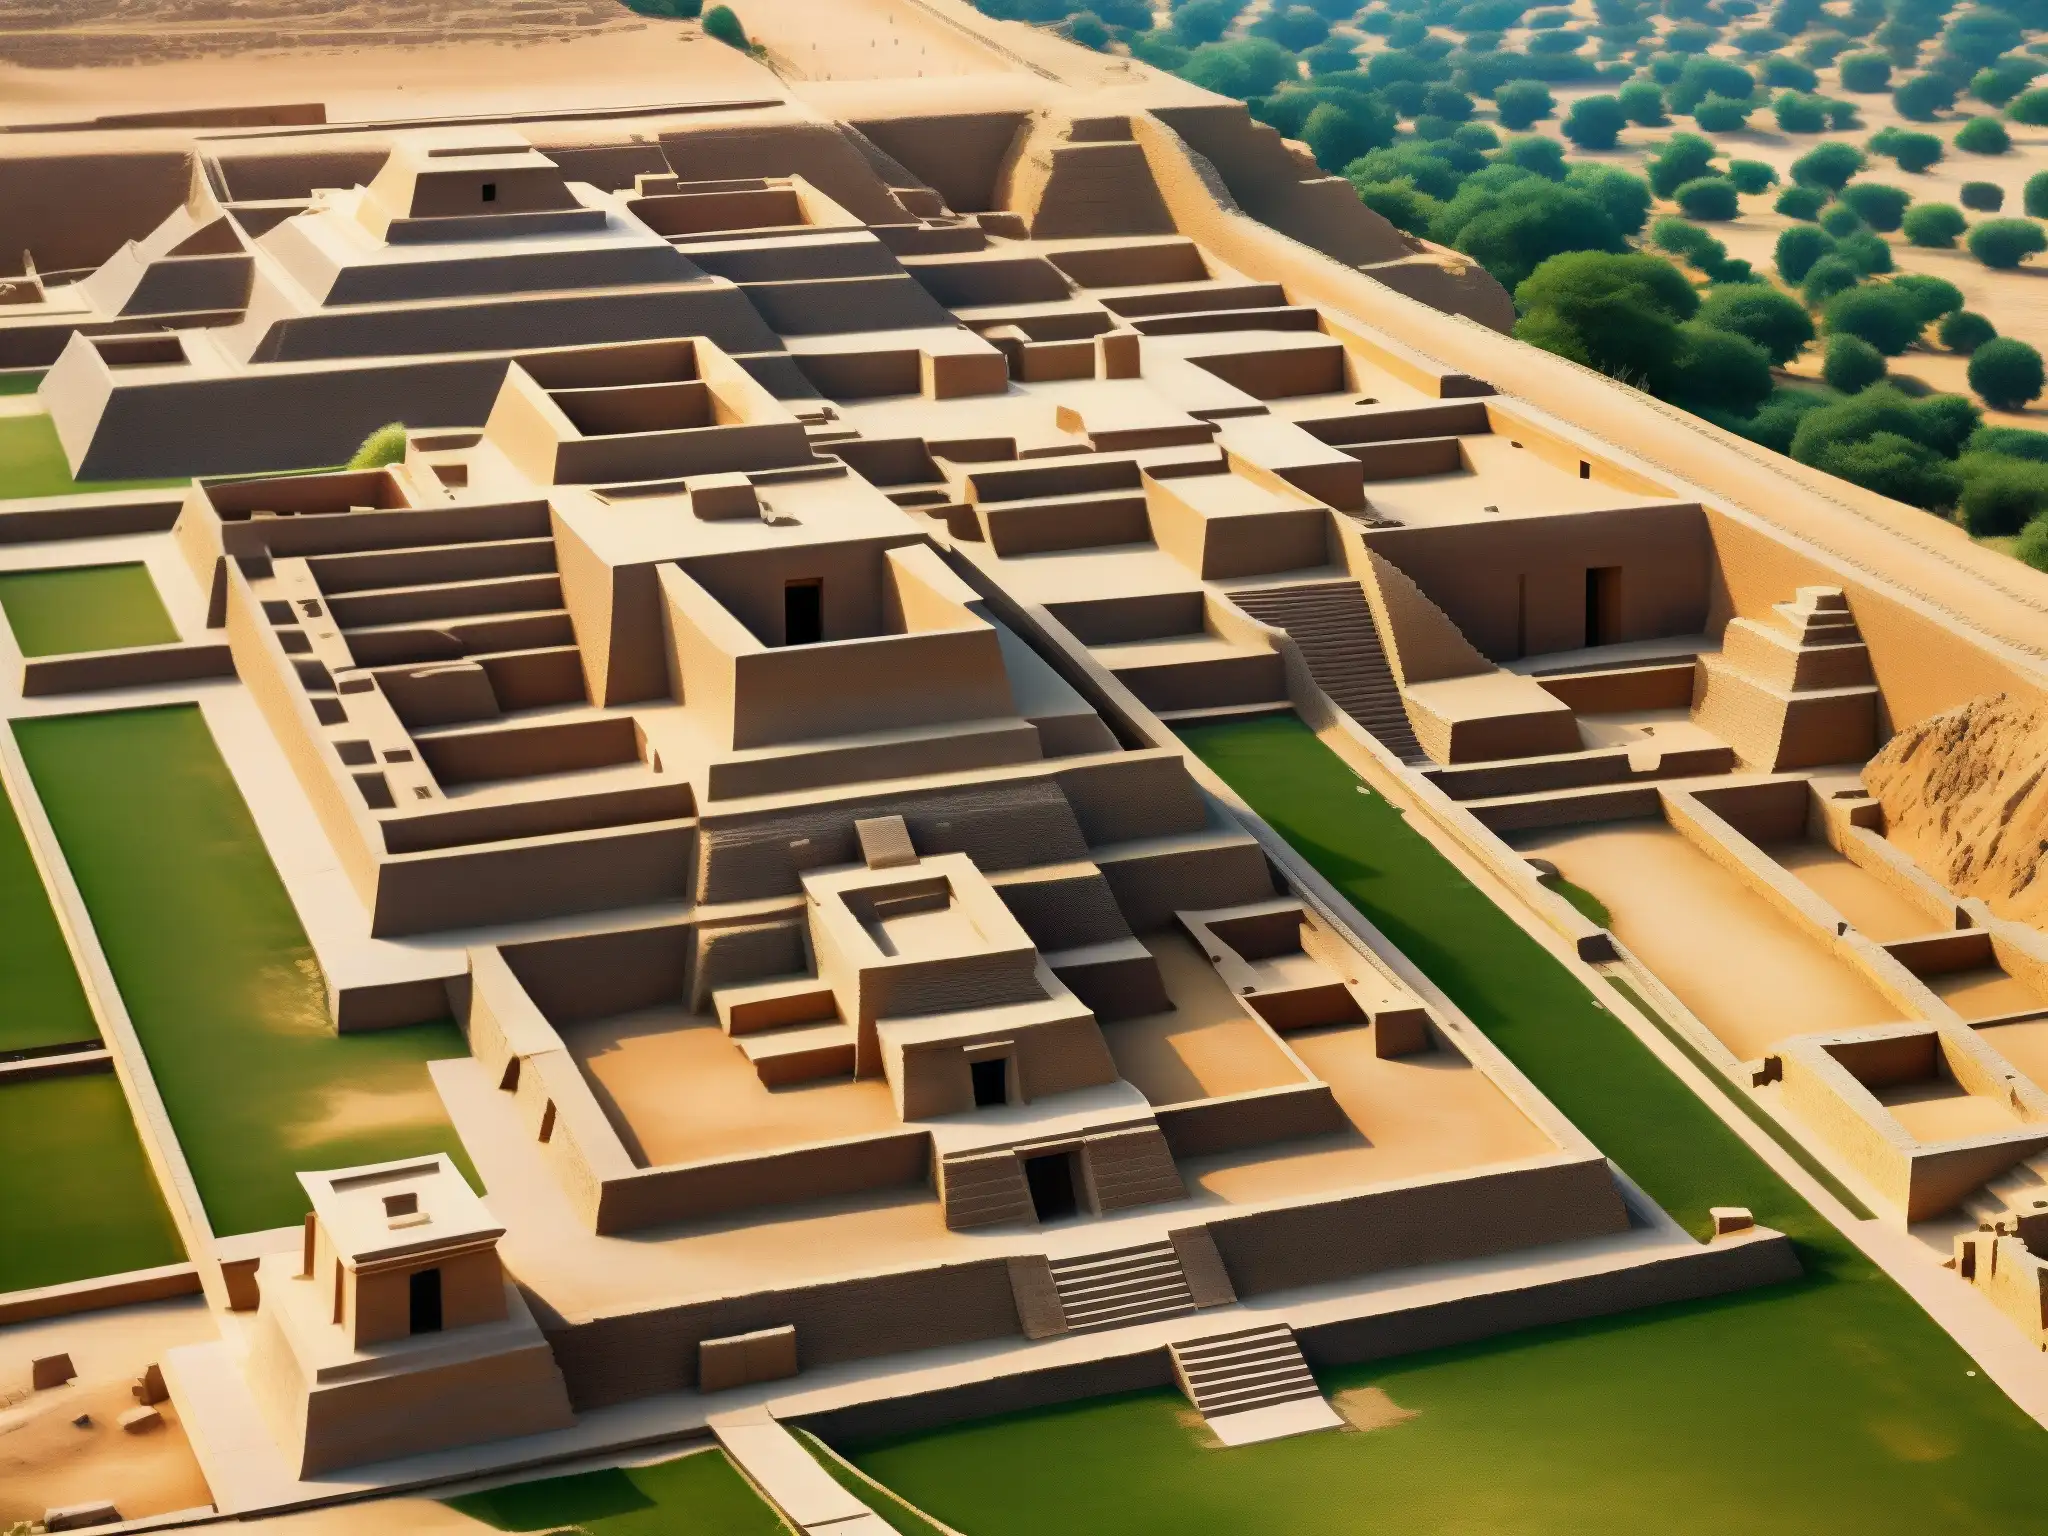 Amanecer suave ilumina las antiguas ruinas de MohenjoDaro, evocando la grandeza de la civilización desaparecida